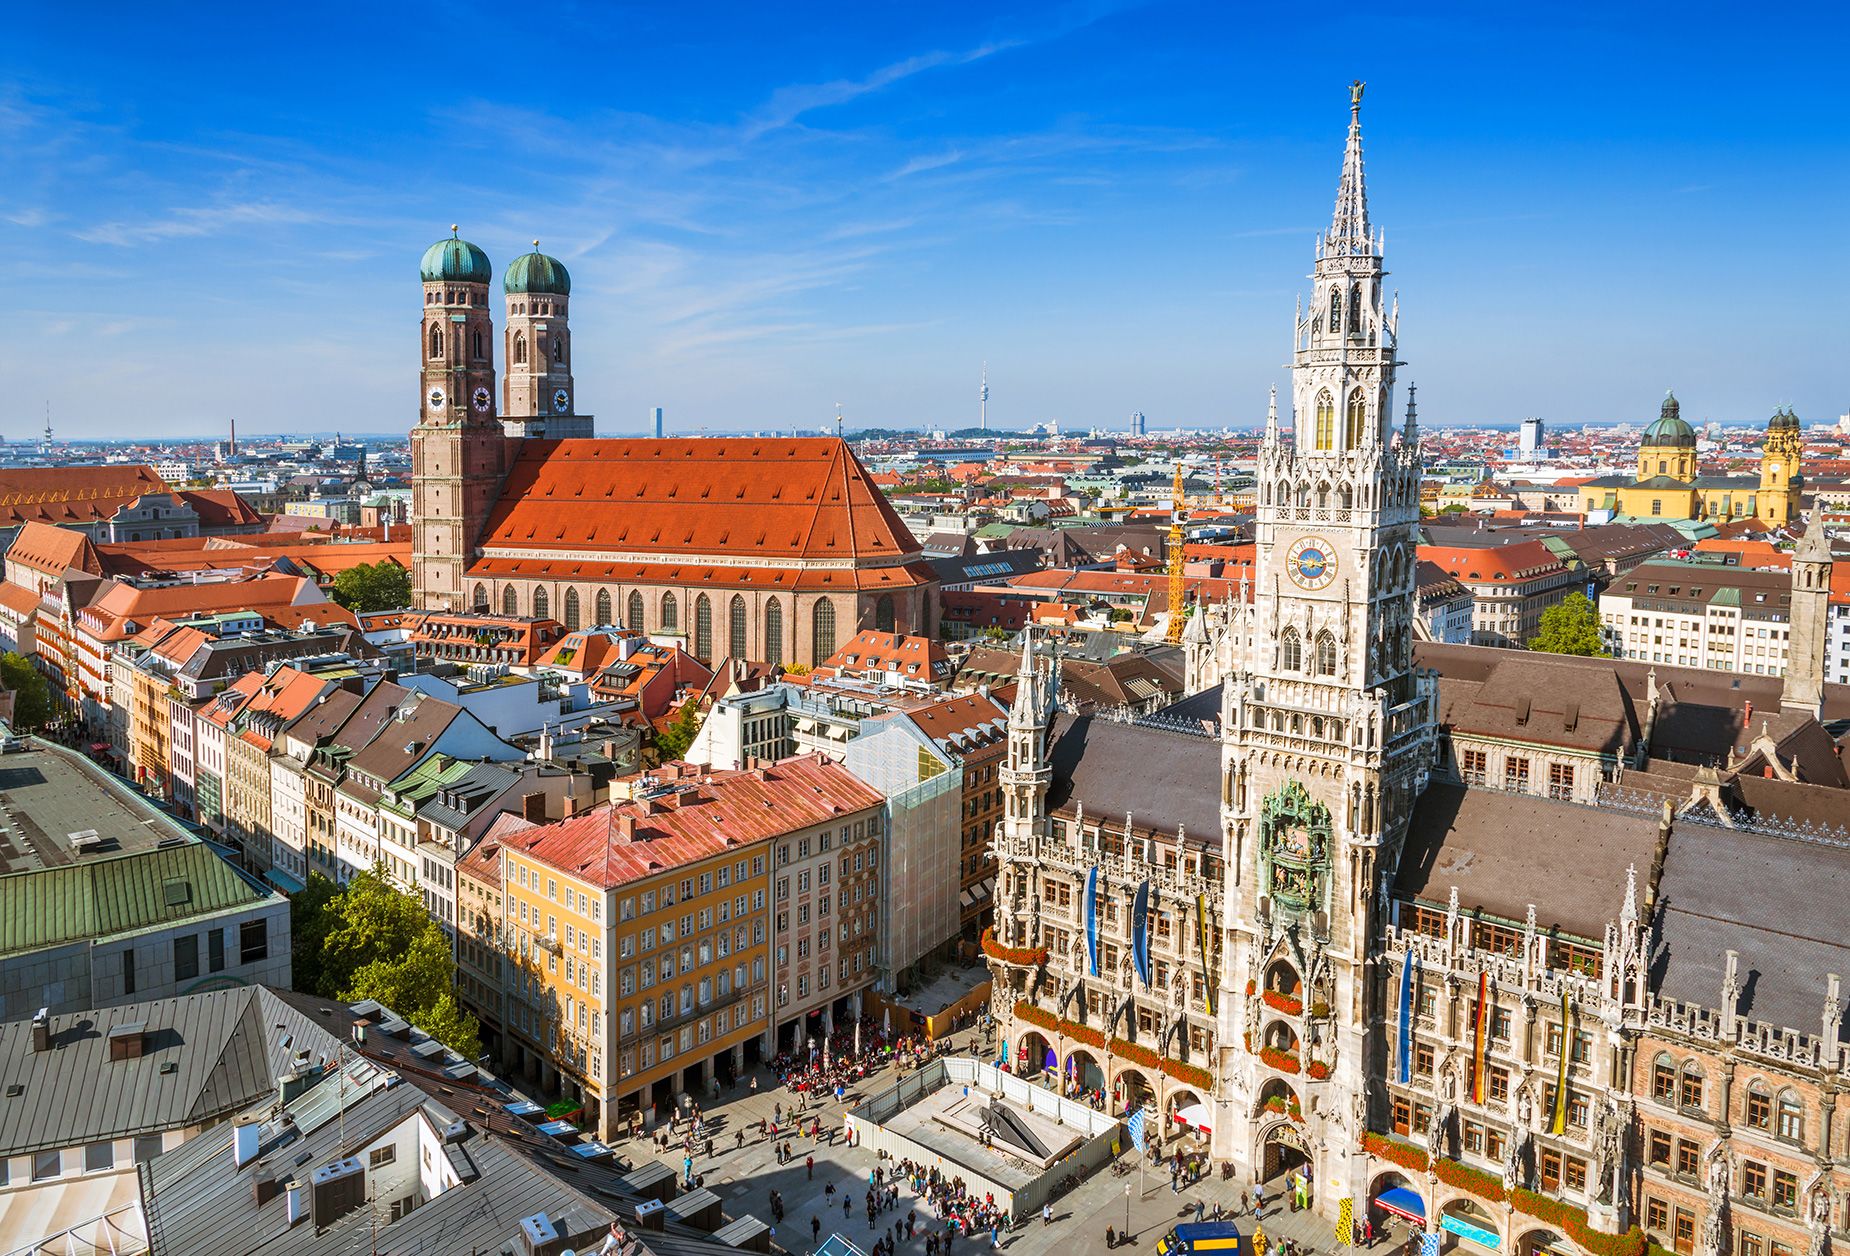 Alemania se considera un país fantástico para las familias. Y visitar sitios históricos como el ayuntamiento en Marienplatz en Munich mantendrá ocupadas sus horas libres. (Nikada/iStockphoto/Getty Images)